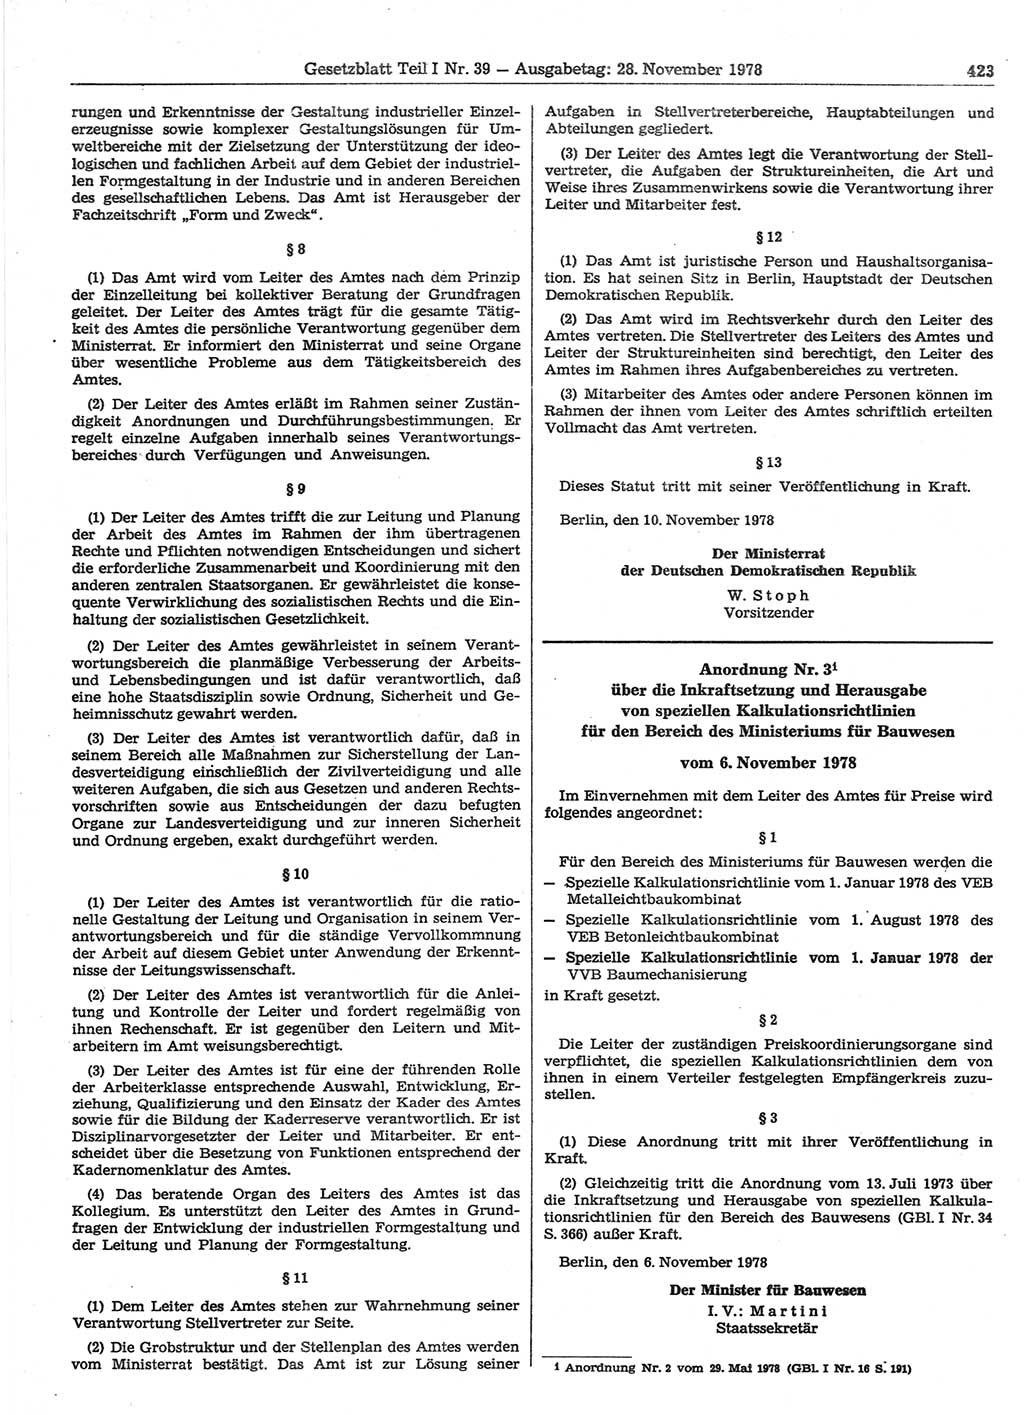 Gesetzblatt (GBl.) der Deutschen Demokratischen Republik (DDR) Teil Ⅰ 1978, Seite 423 (GBl. DDR Ⅰ 1978, S. 423)